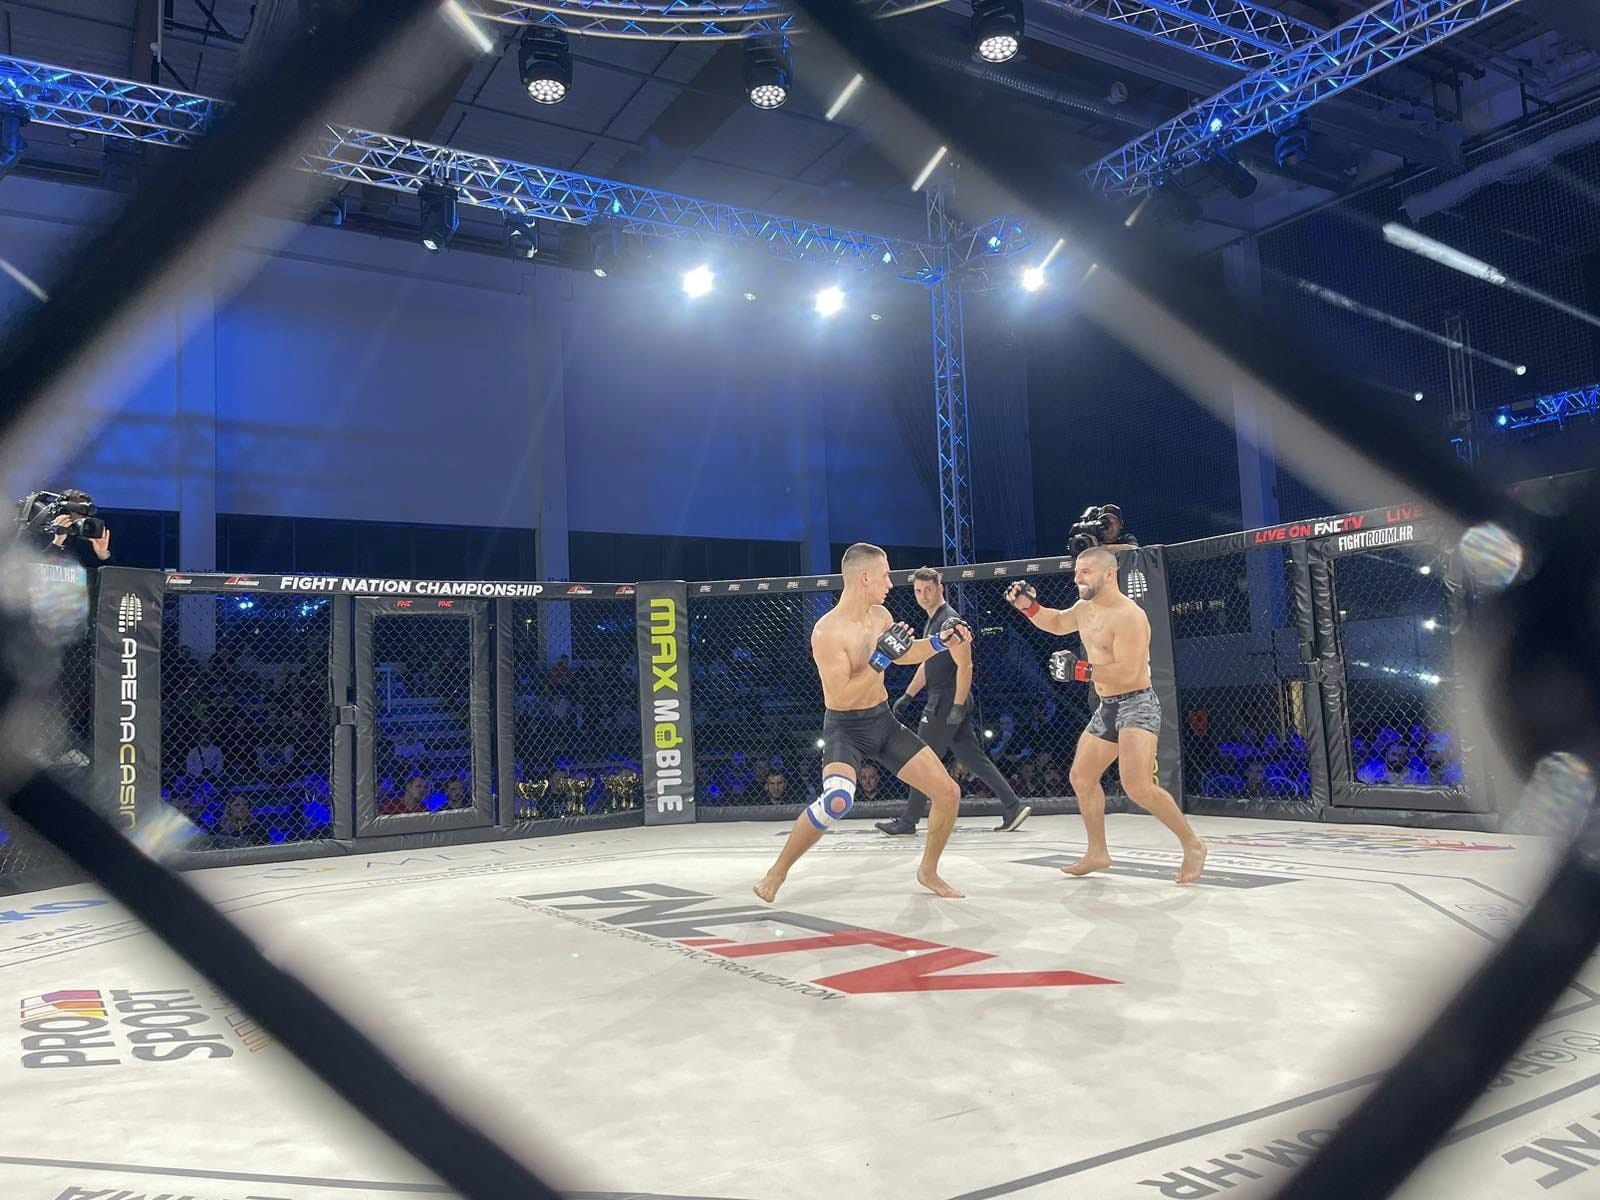 U Sisku je u petak 23. prosinca 2022. godine, održana sportska večer u kojoj su borci u sklopu Fight Nation Championship događaja pokazali sve svoje vještine u mixed material arts tehnici borbe.